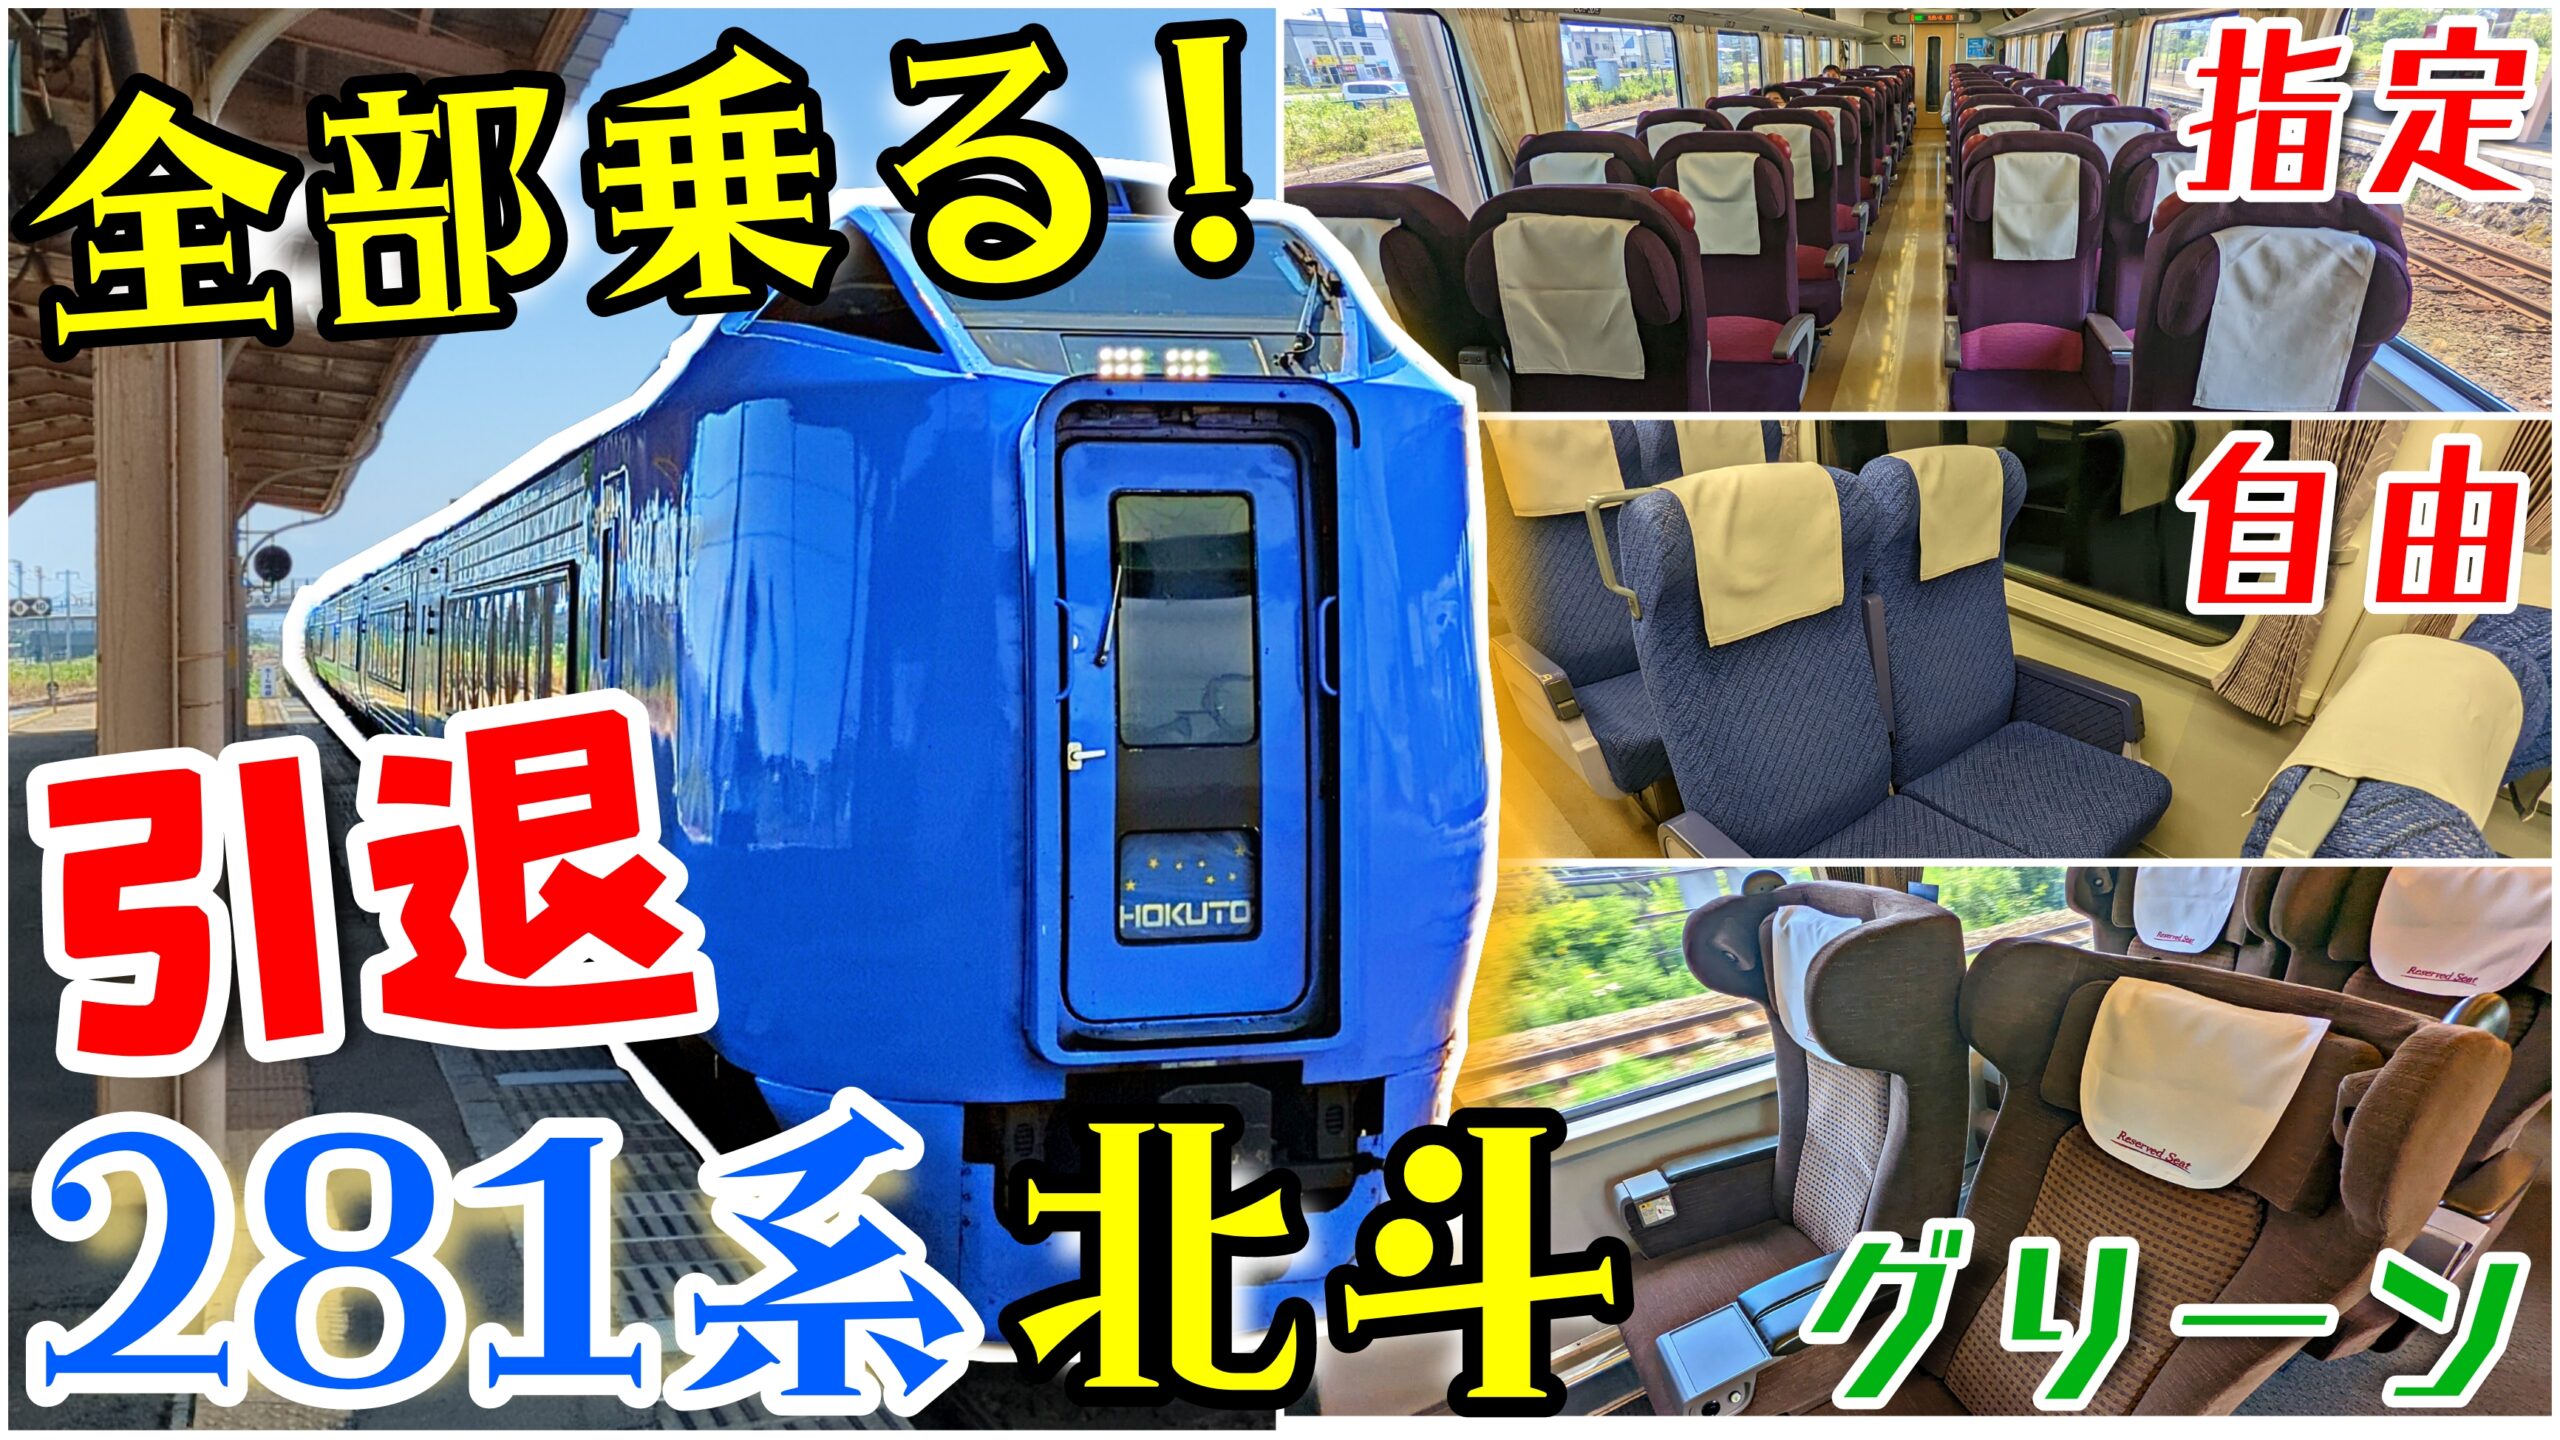 鉄道チップス JR北海道 キハ281系 電車カード - 鉄道